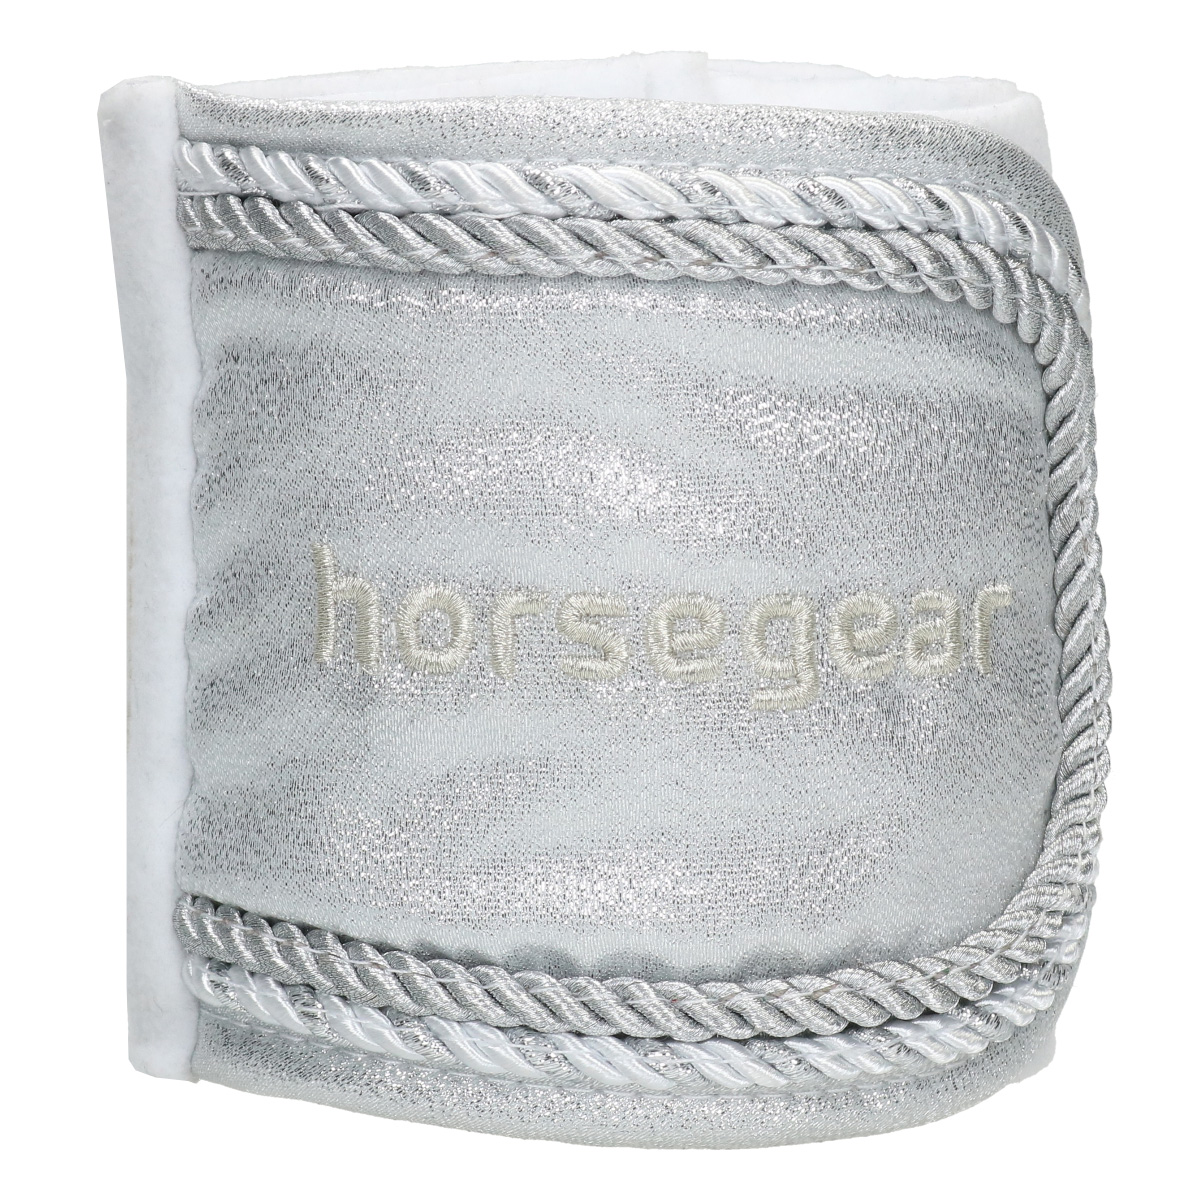 Bandages Horsegear Hgsparkle Zilver, PONY in zilver